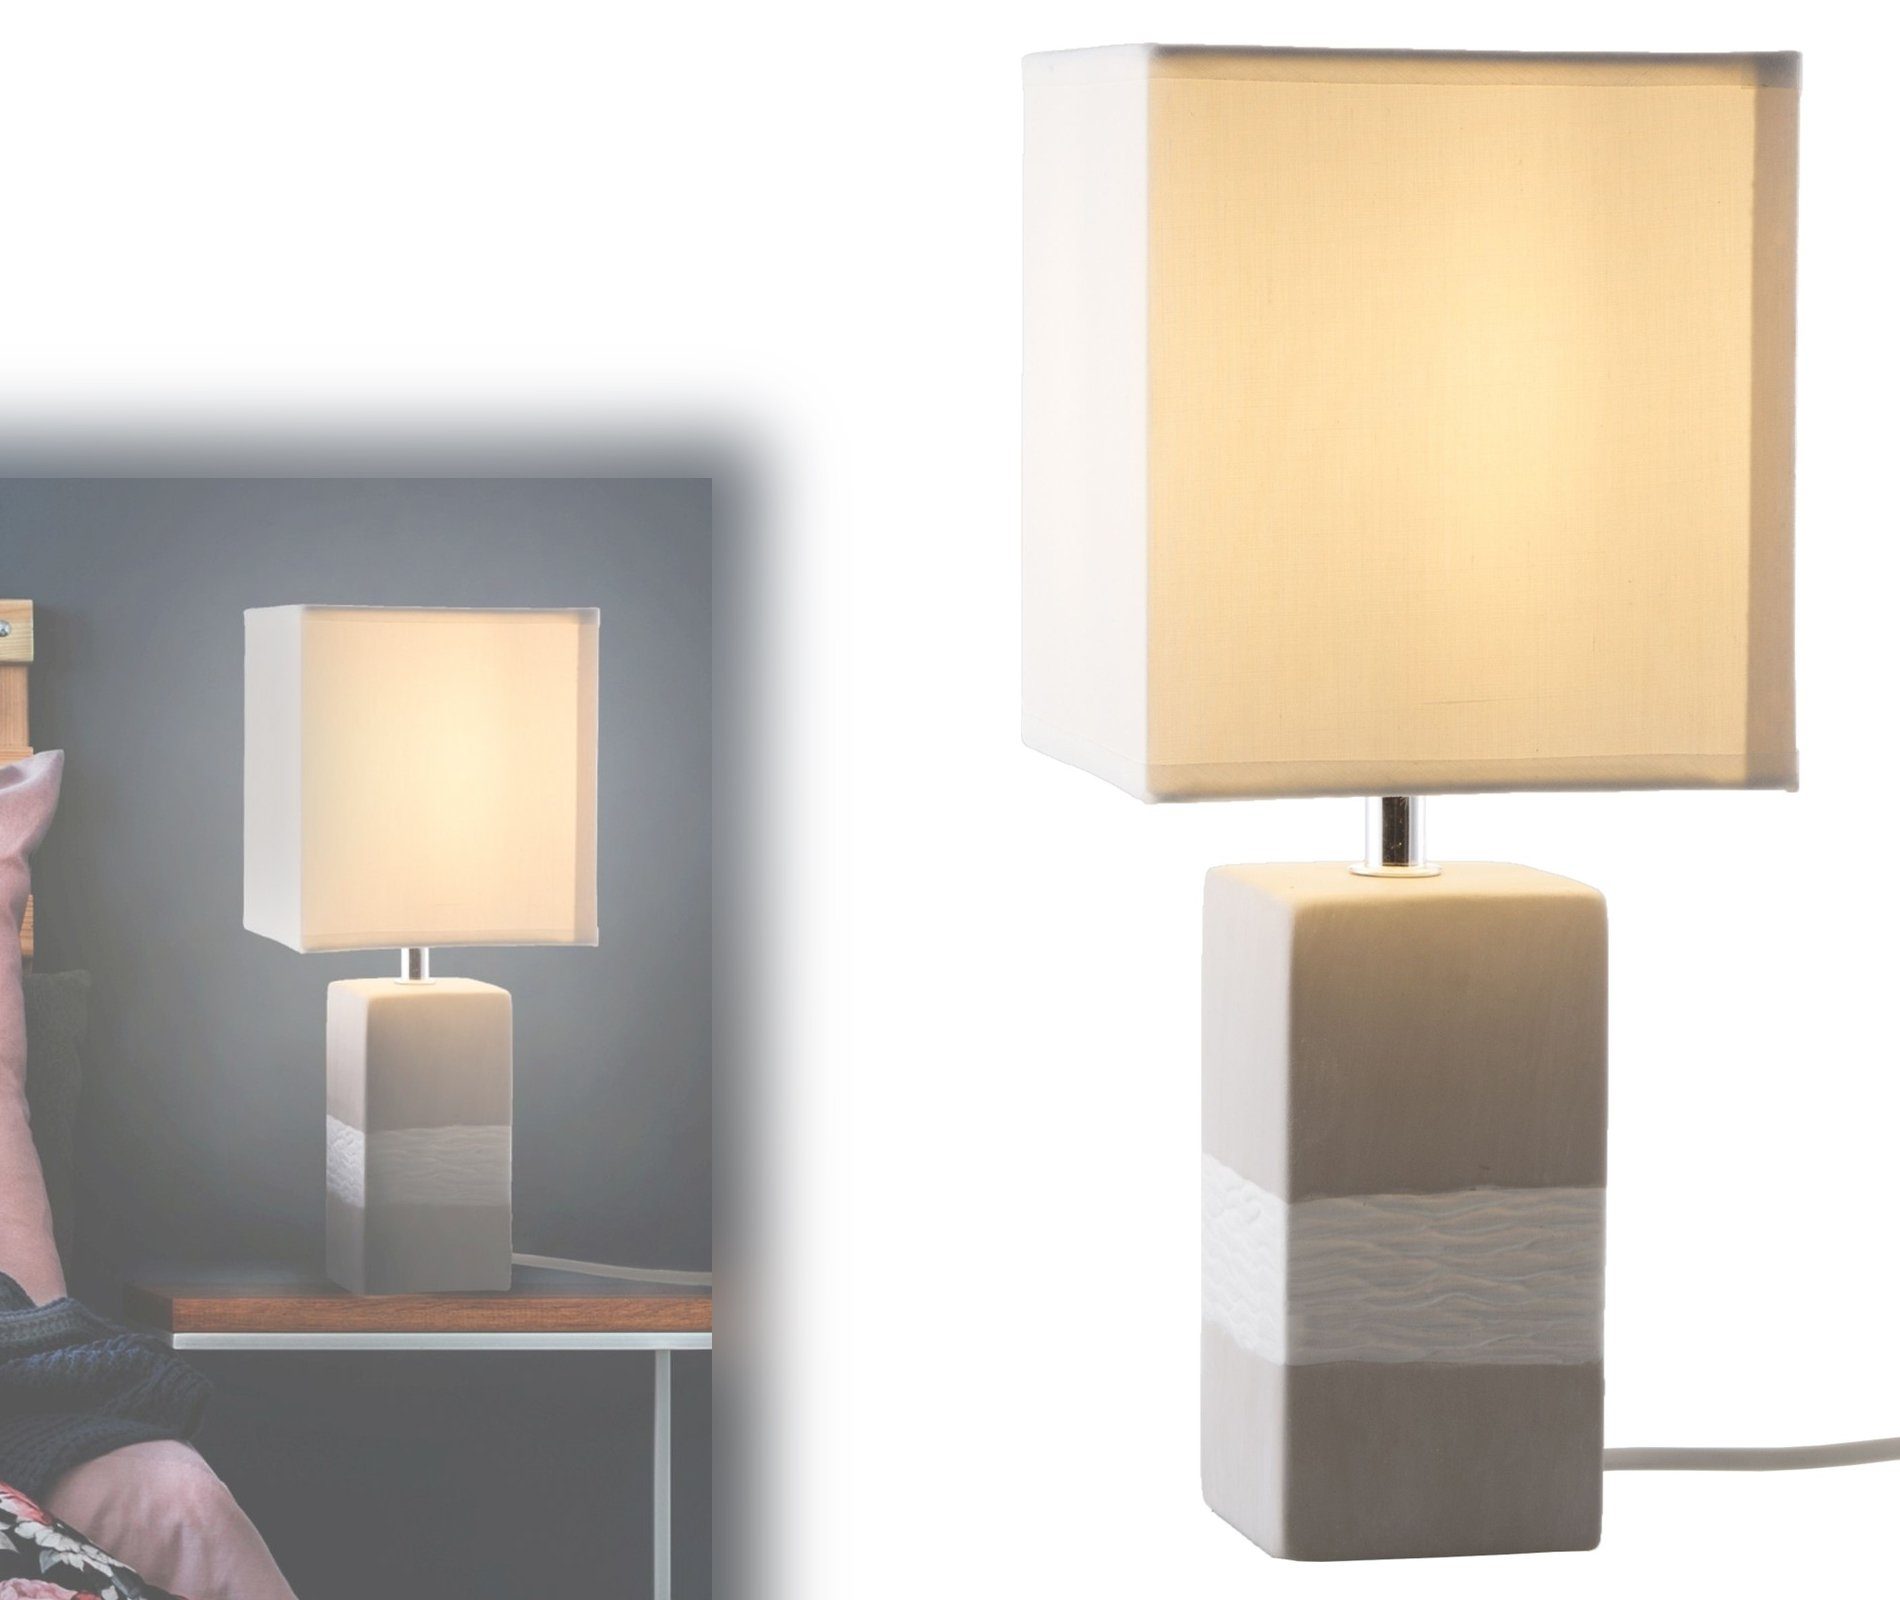 bmf-versand Tischleuchte Nino Leuchten Tischlampe Wohnzimmer Tischleuchte Schlafzimmer grau